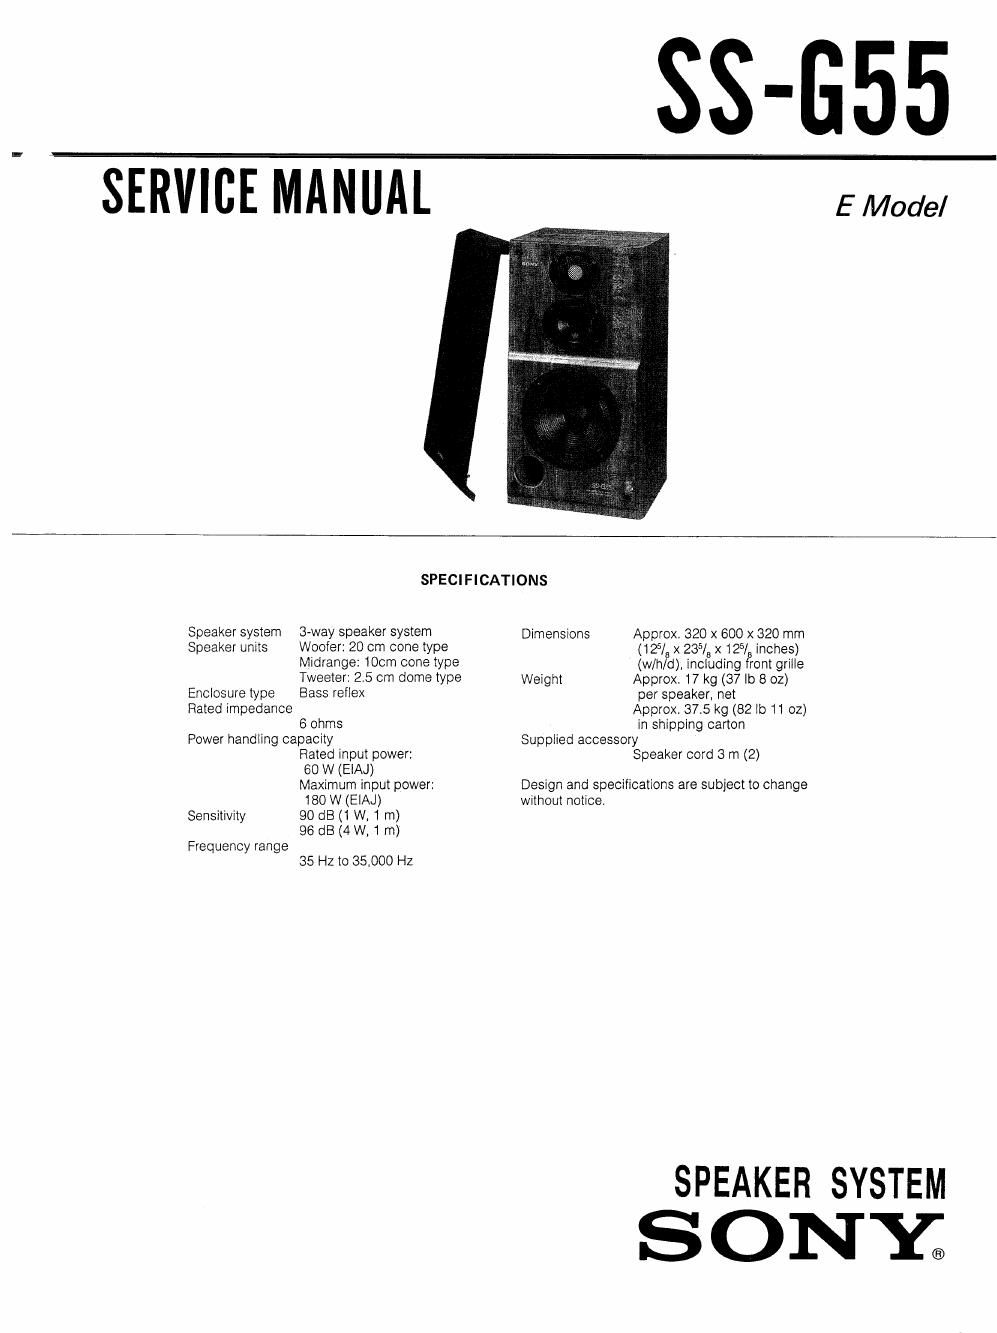 sony ss g 55 service manual